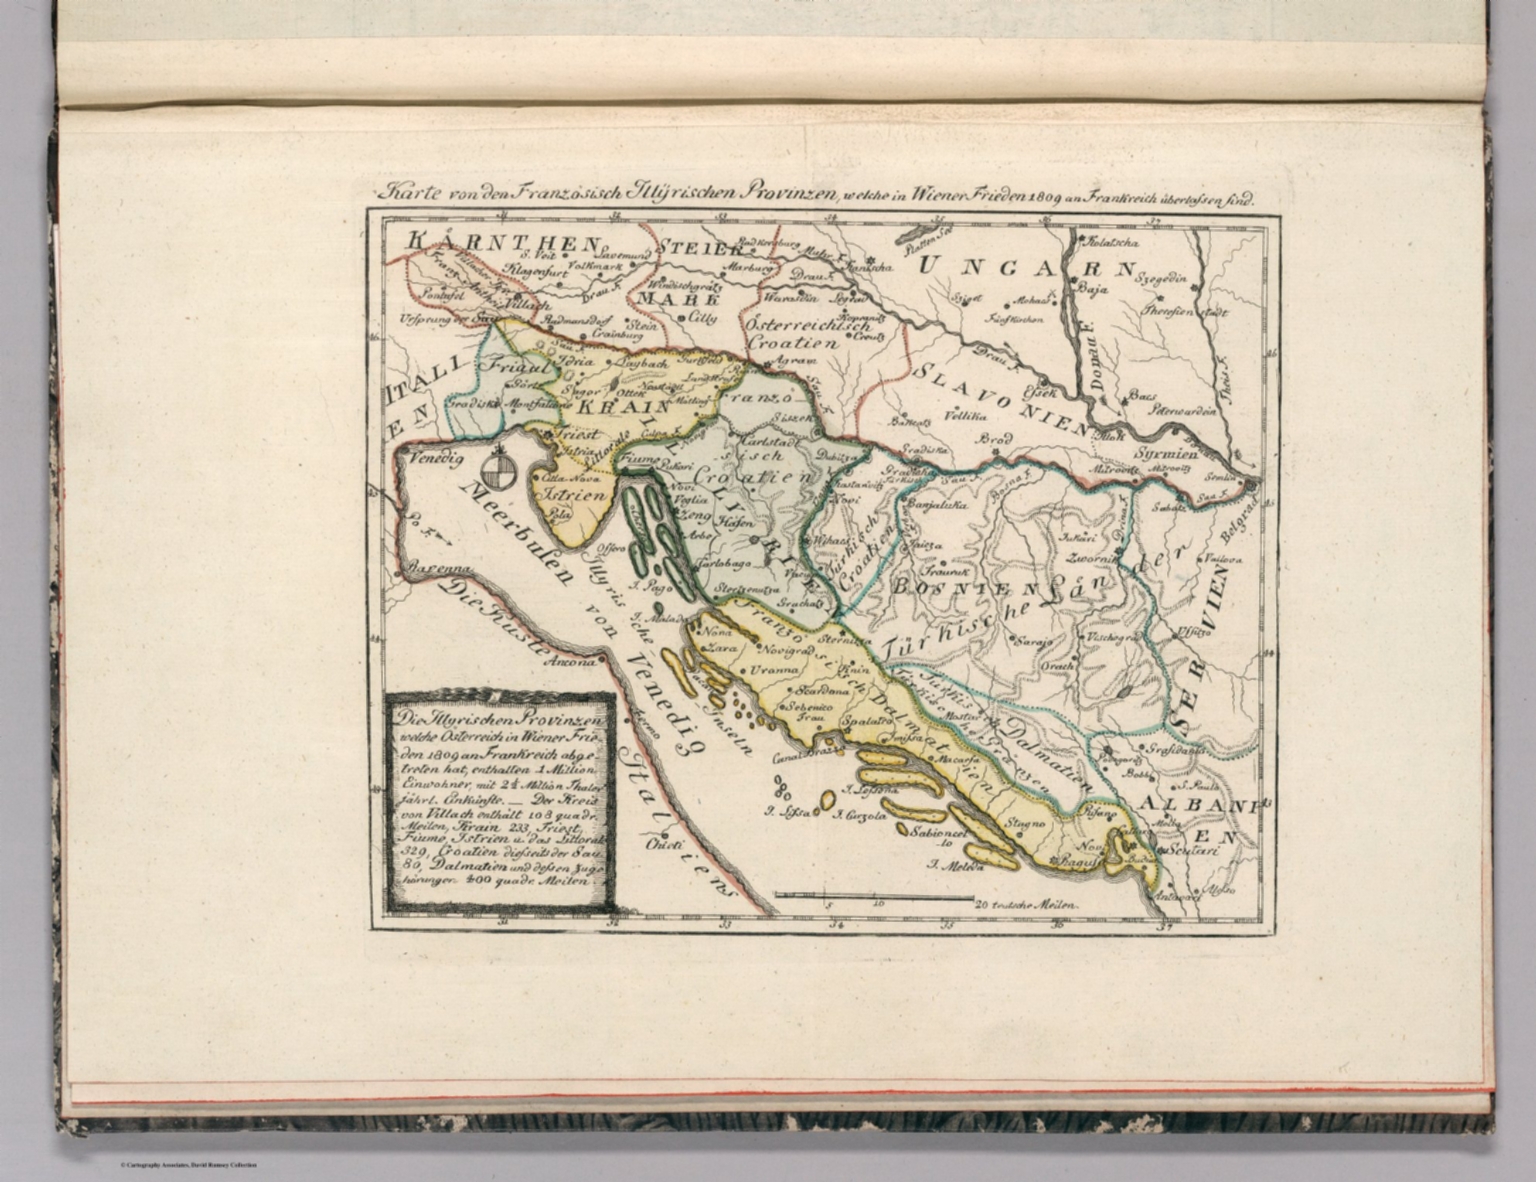 Karte Von Den Franzosisch Illyrischen Provinzen David Rumsey Historical Map Collection